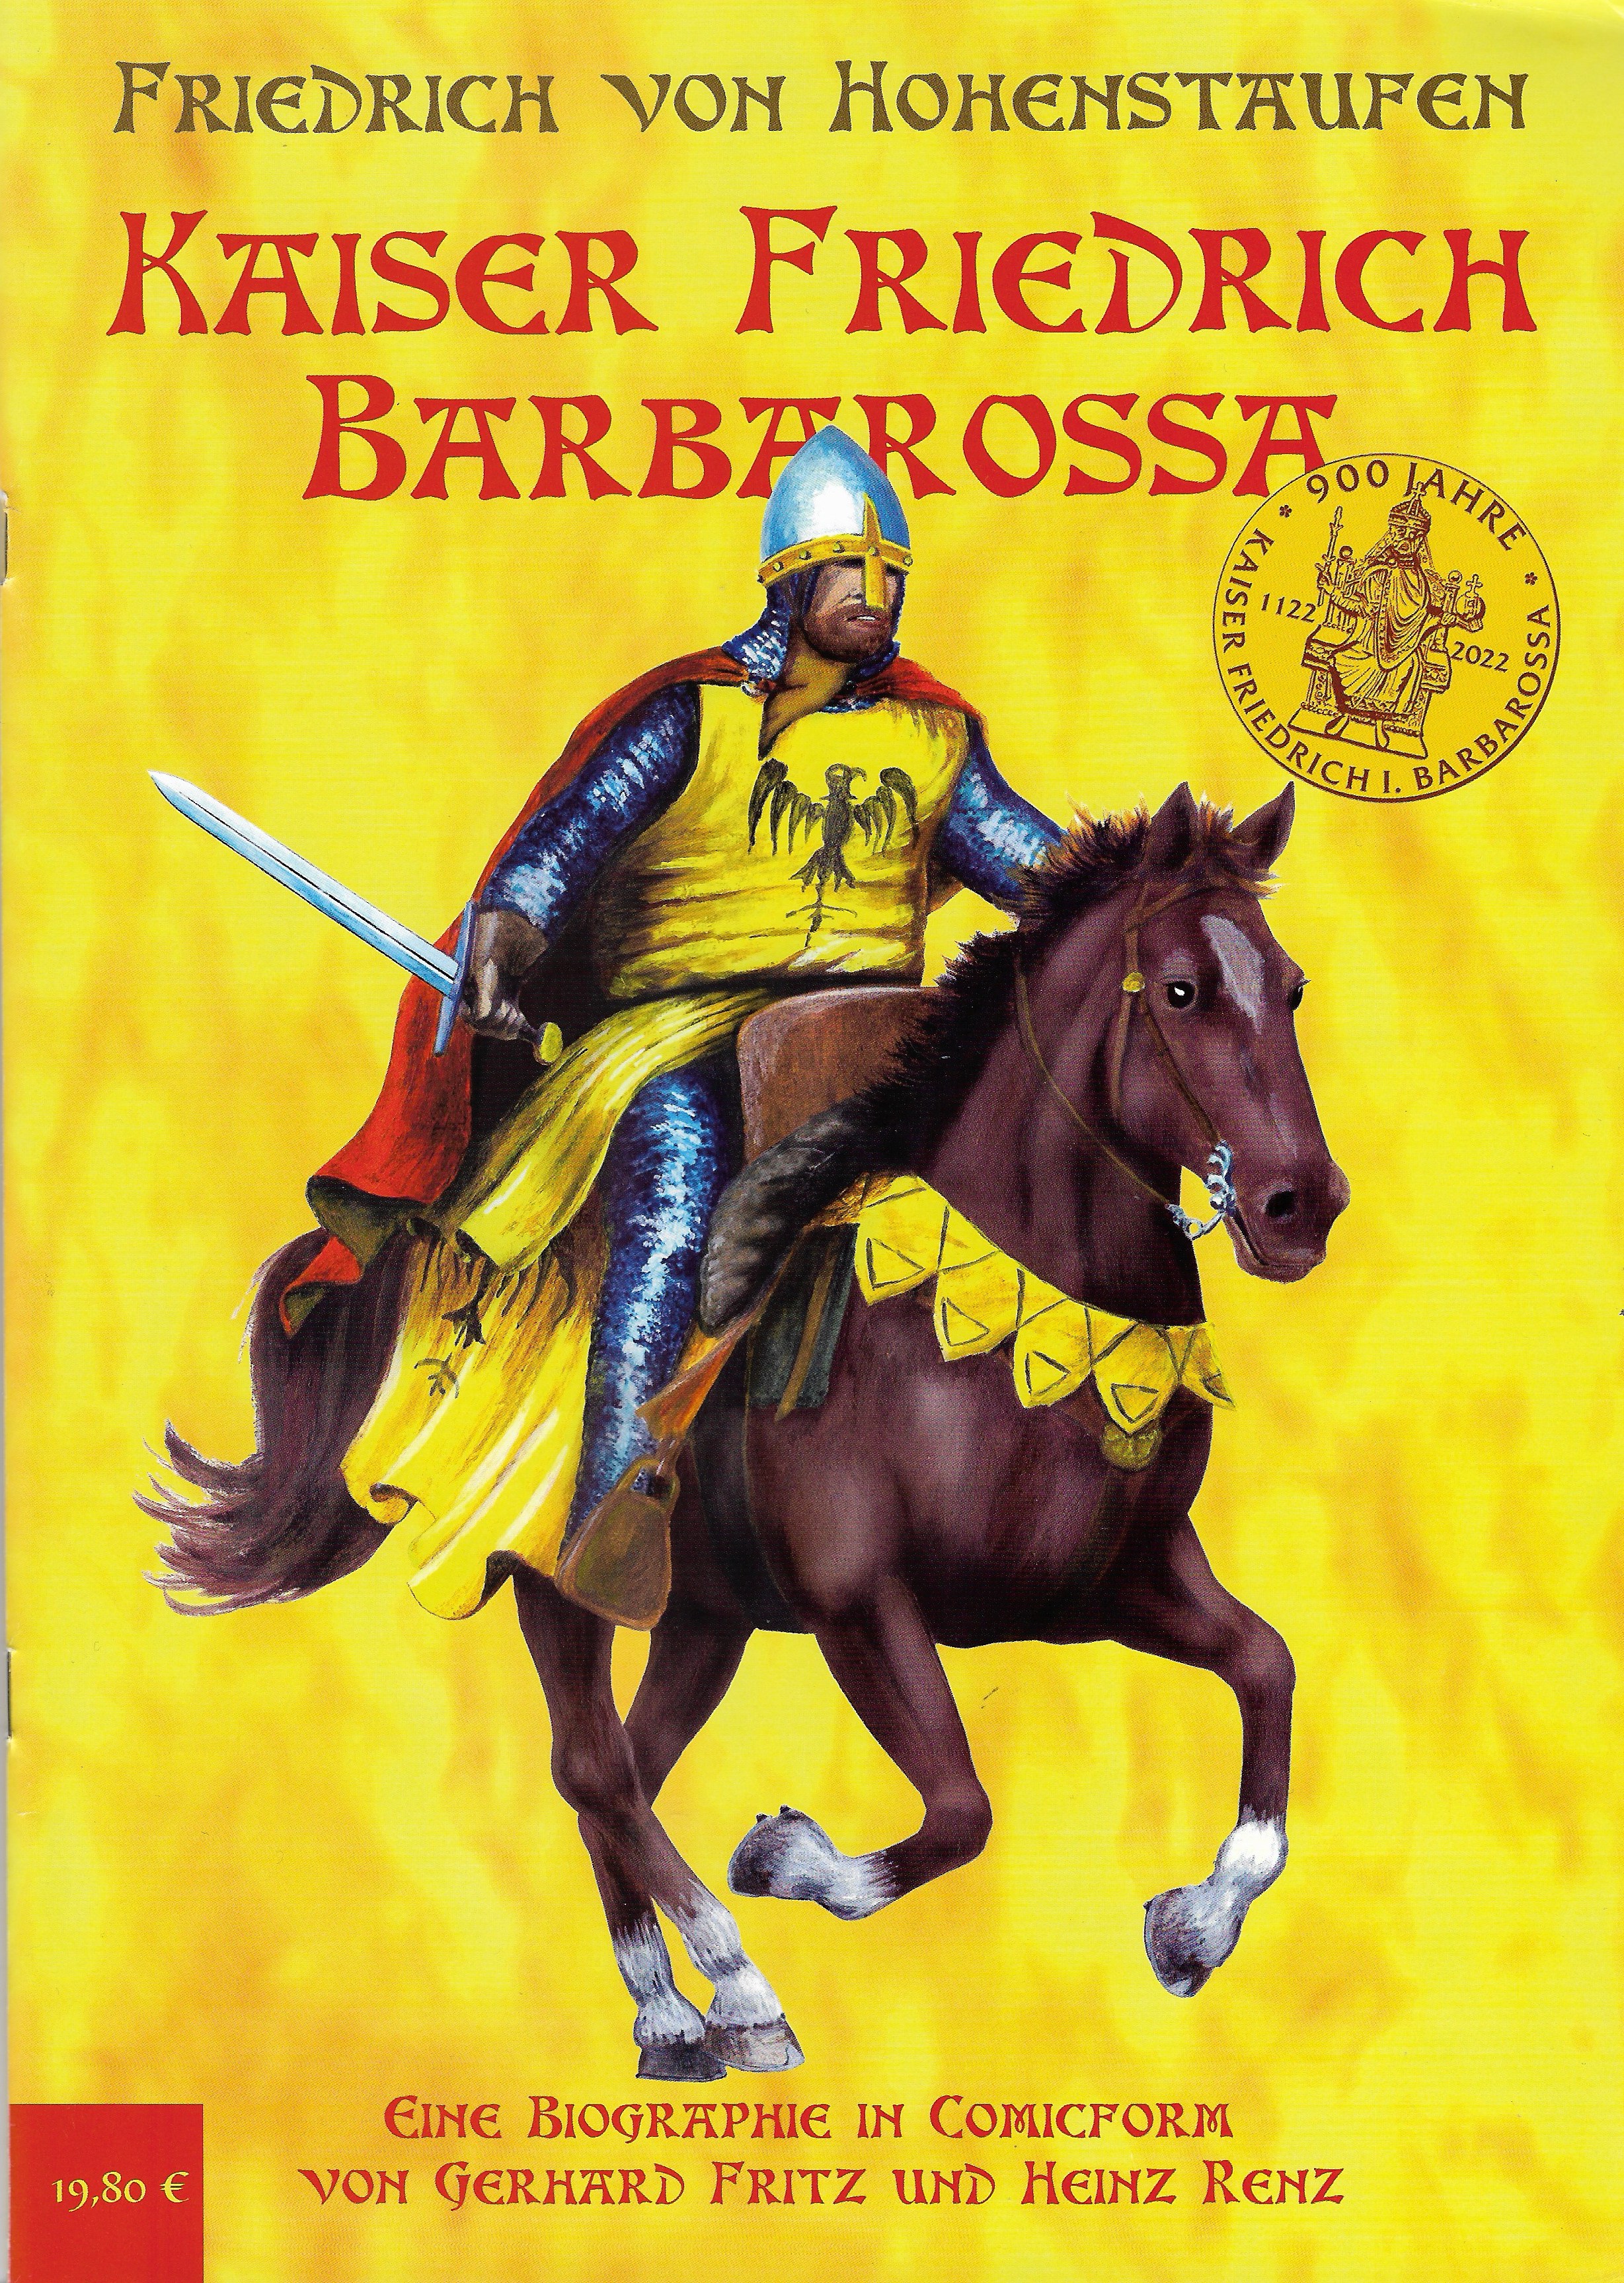 Kaiser Friedrich Barbarossa